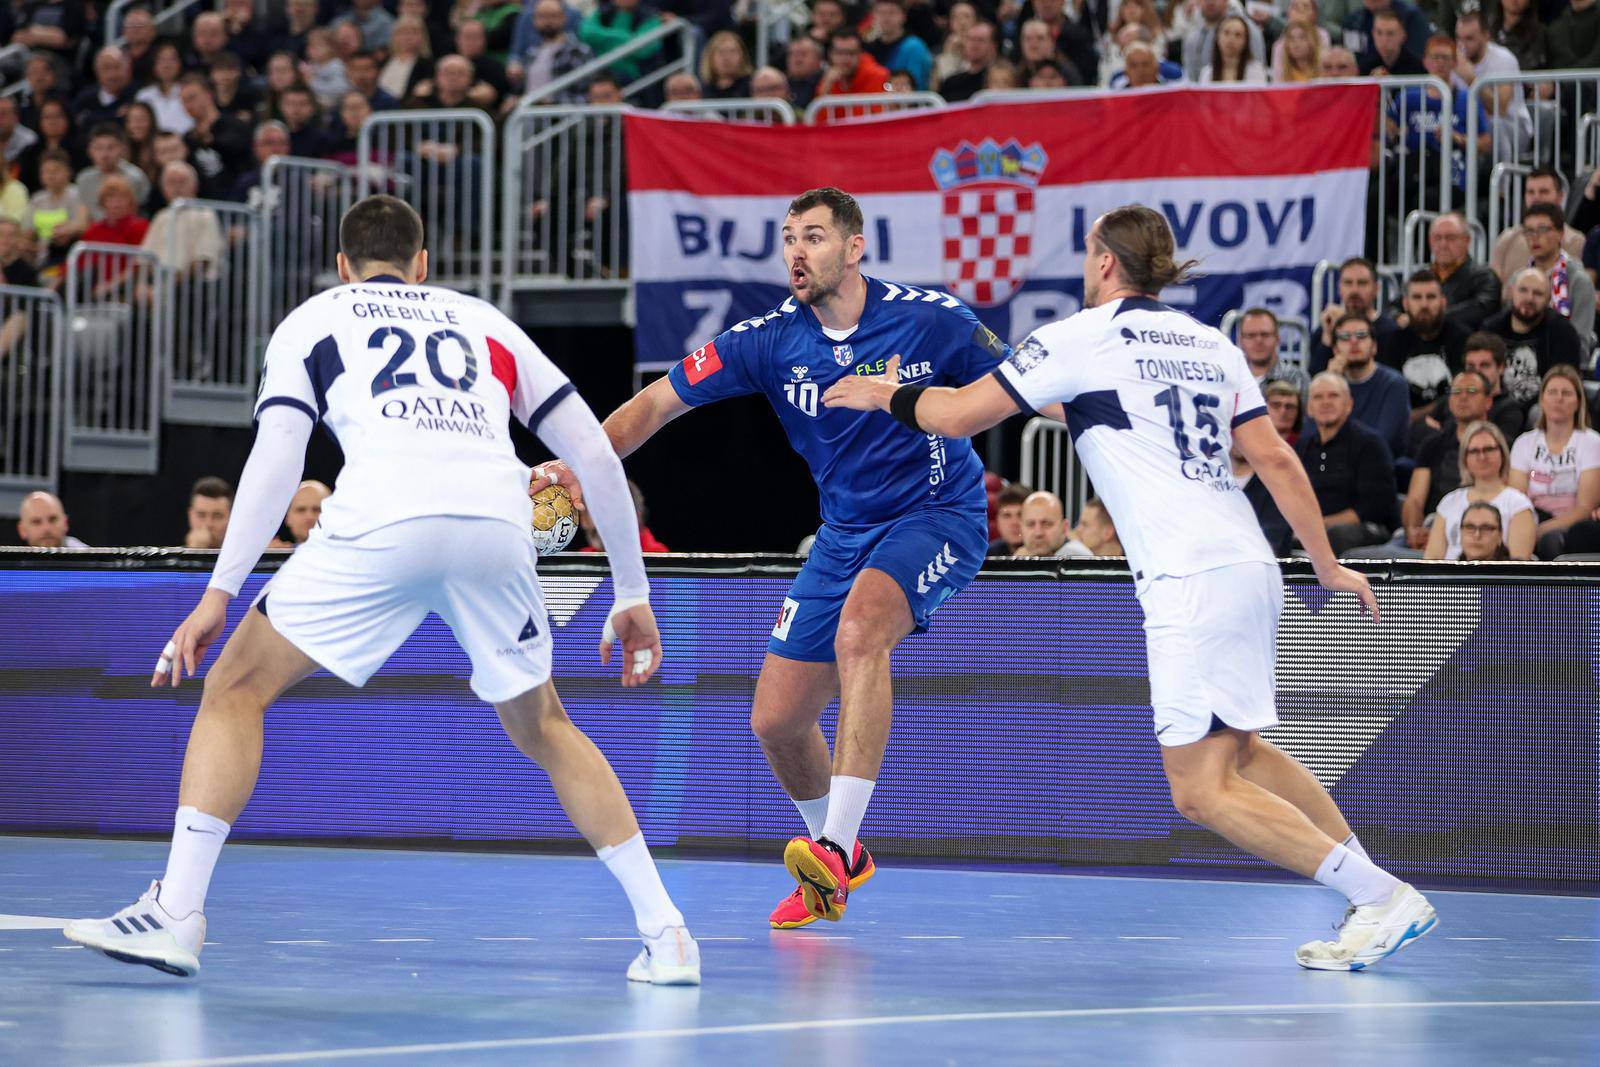 Zagreb: 13. kolo EHF Lige prvaka, RK Zagreb - PSG